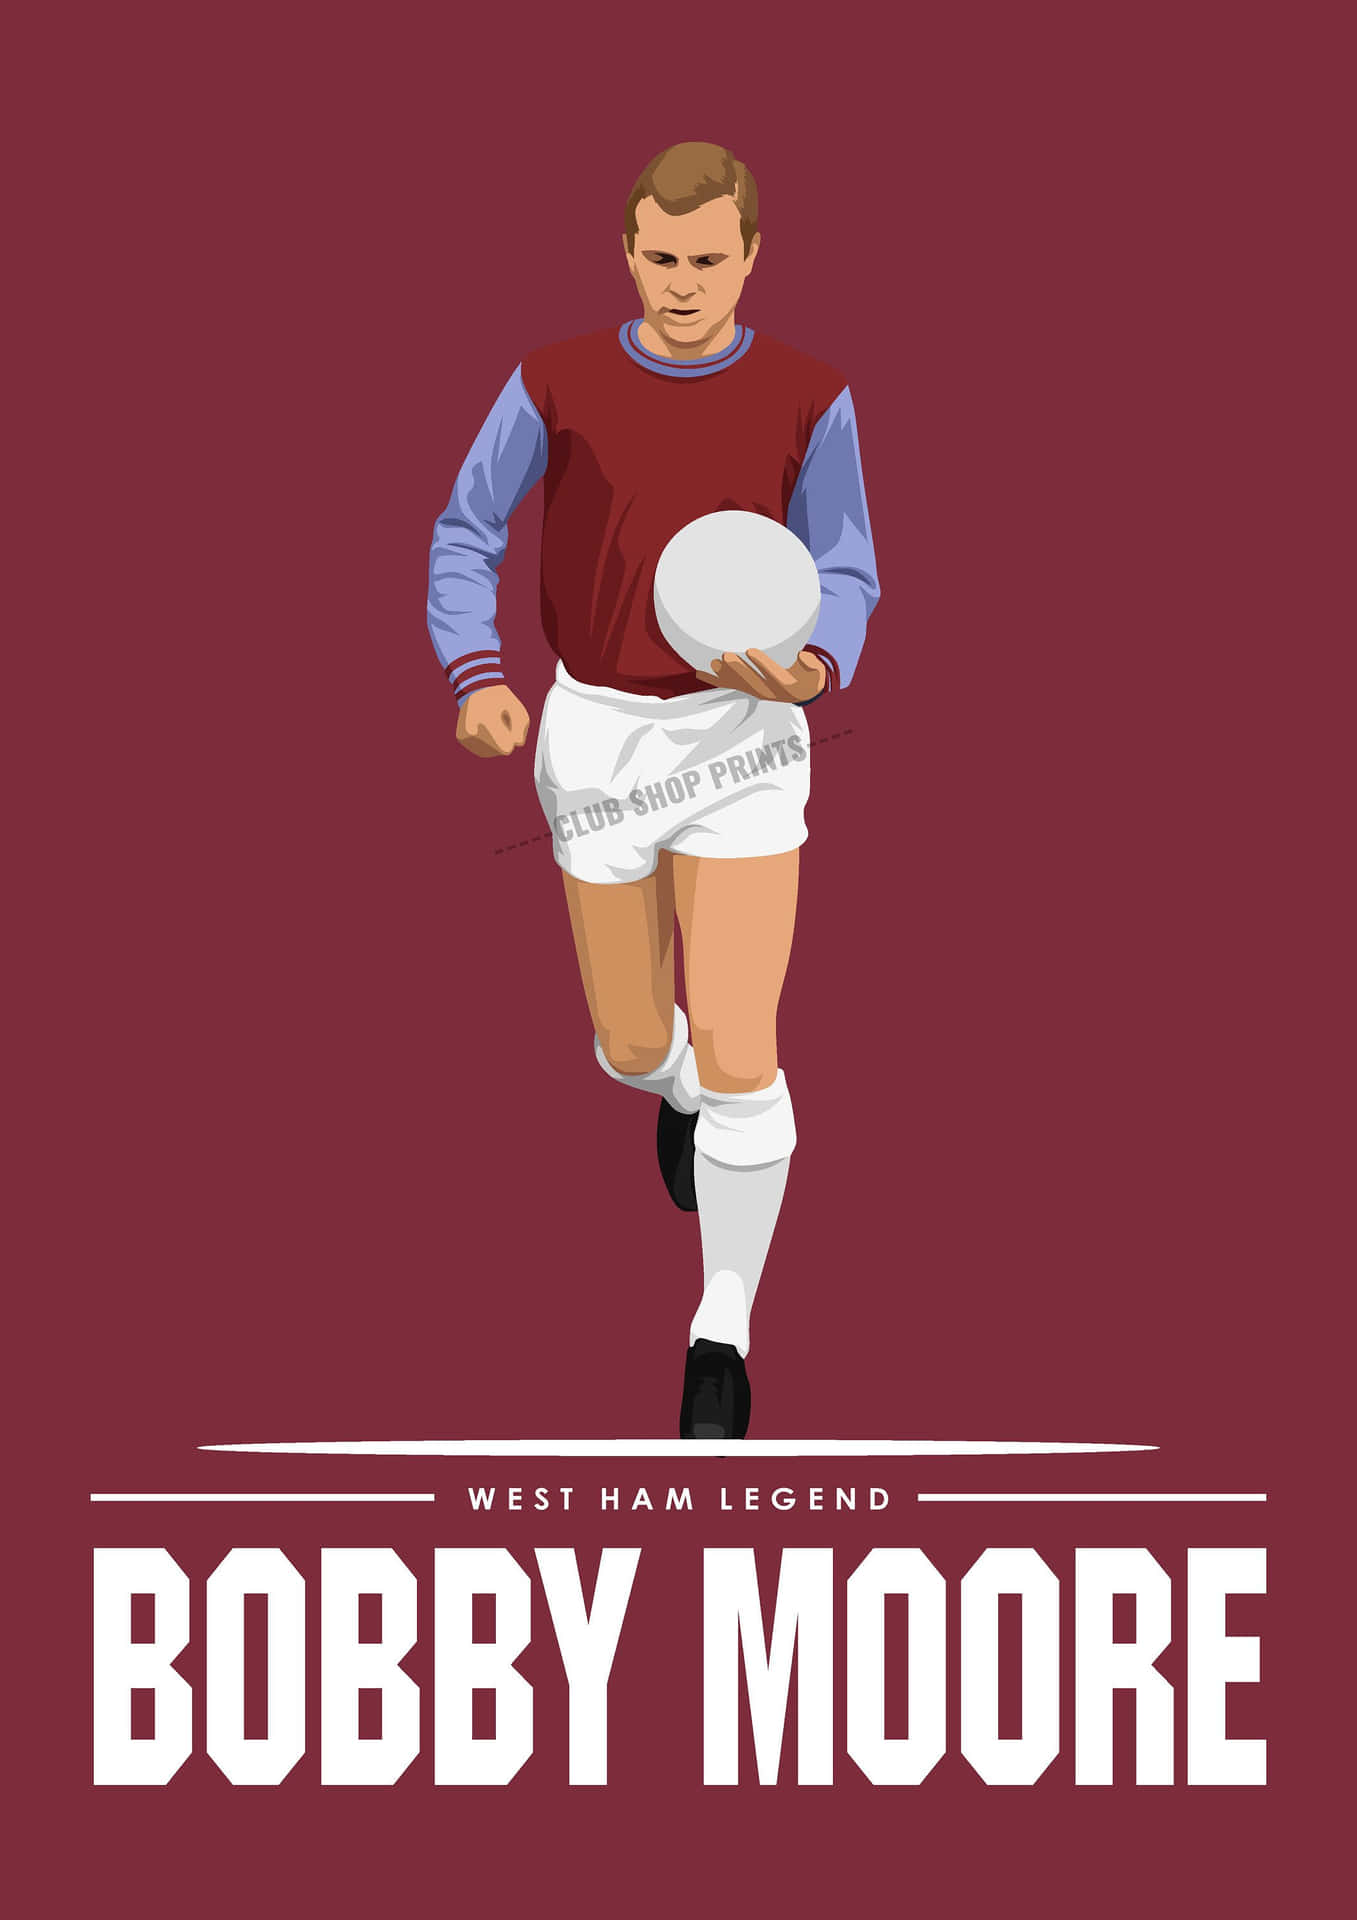 Westham Legende Bobby Moore Wallpaper